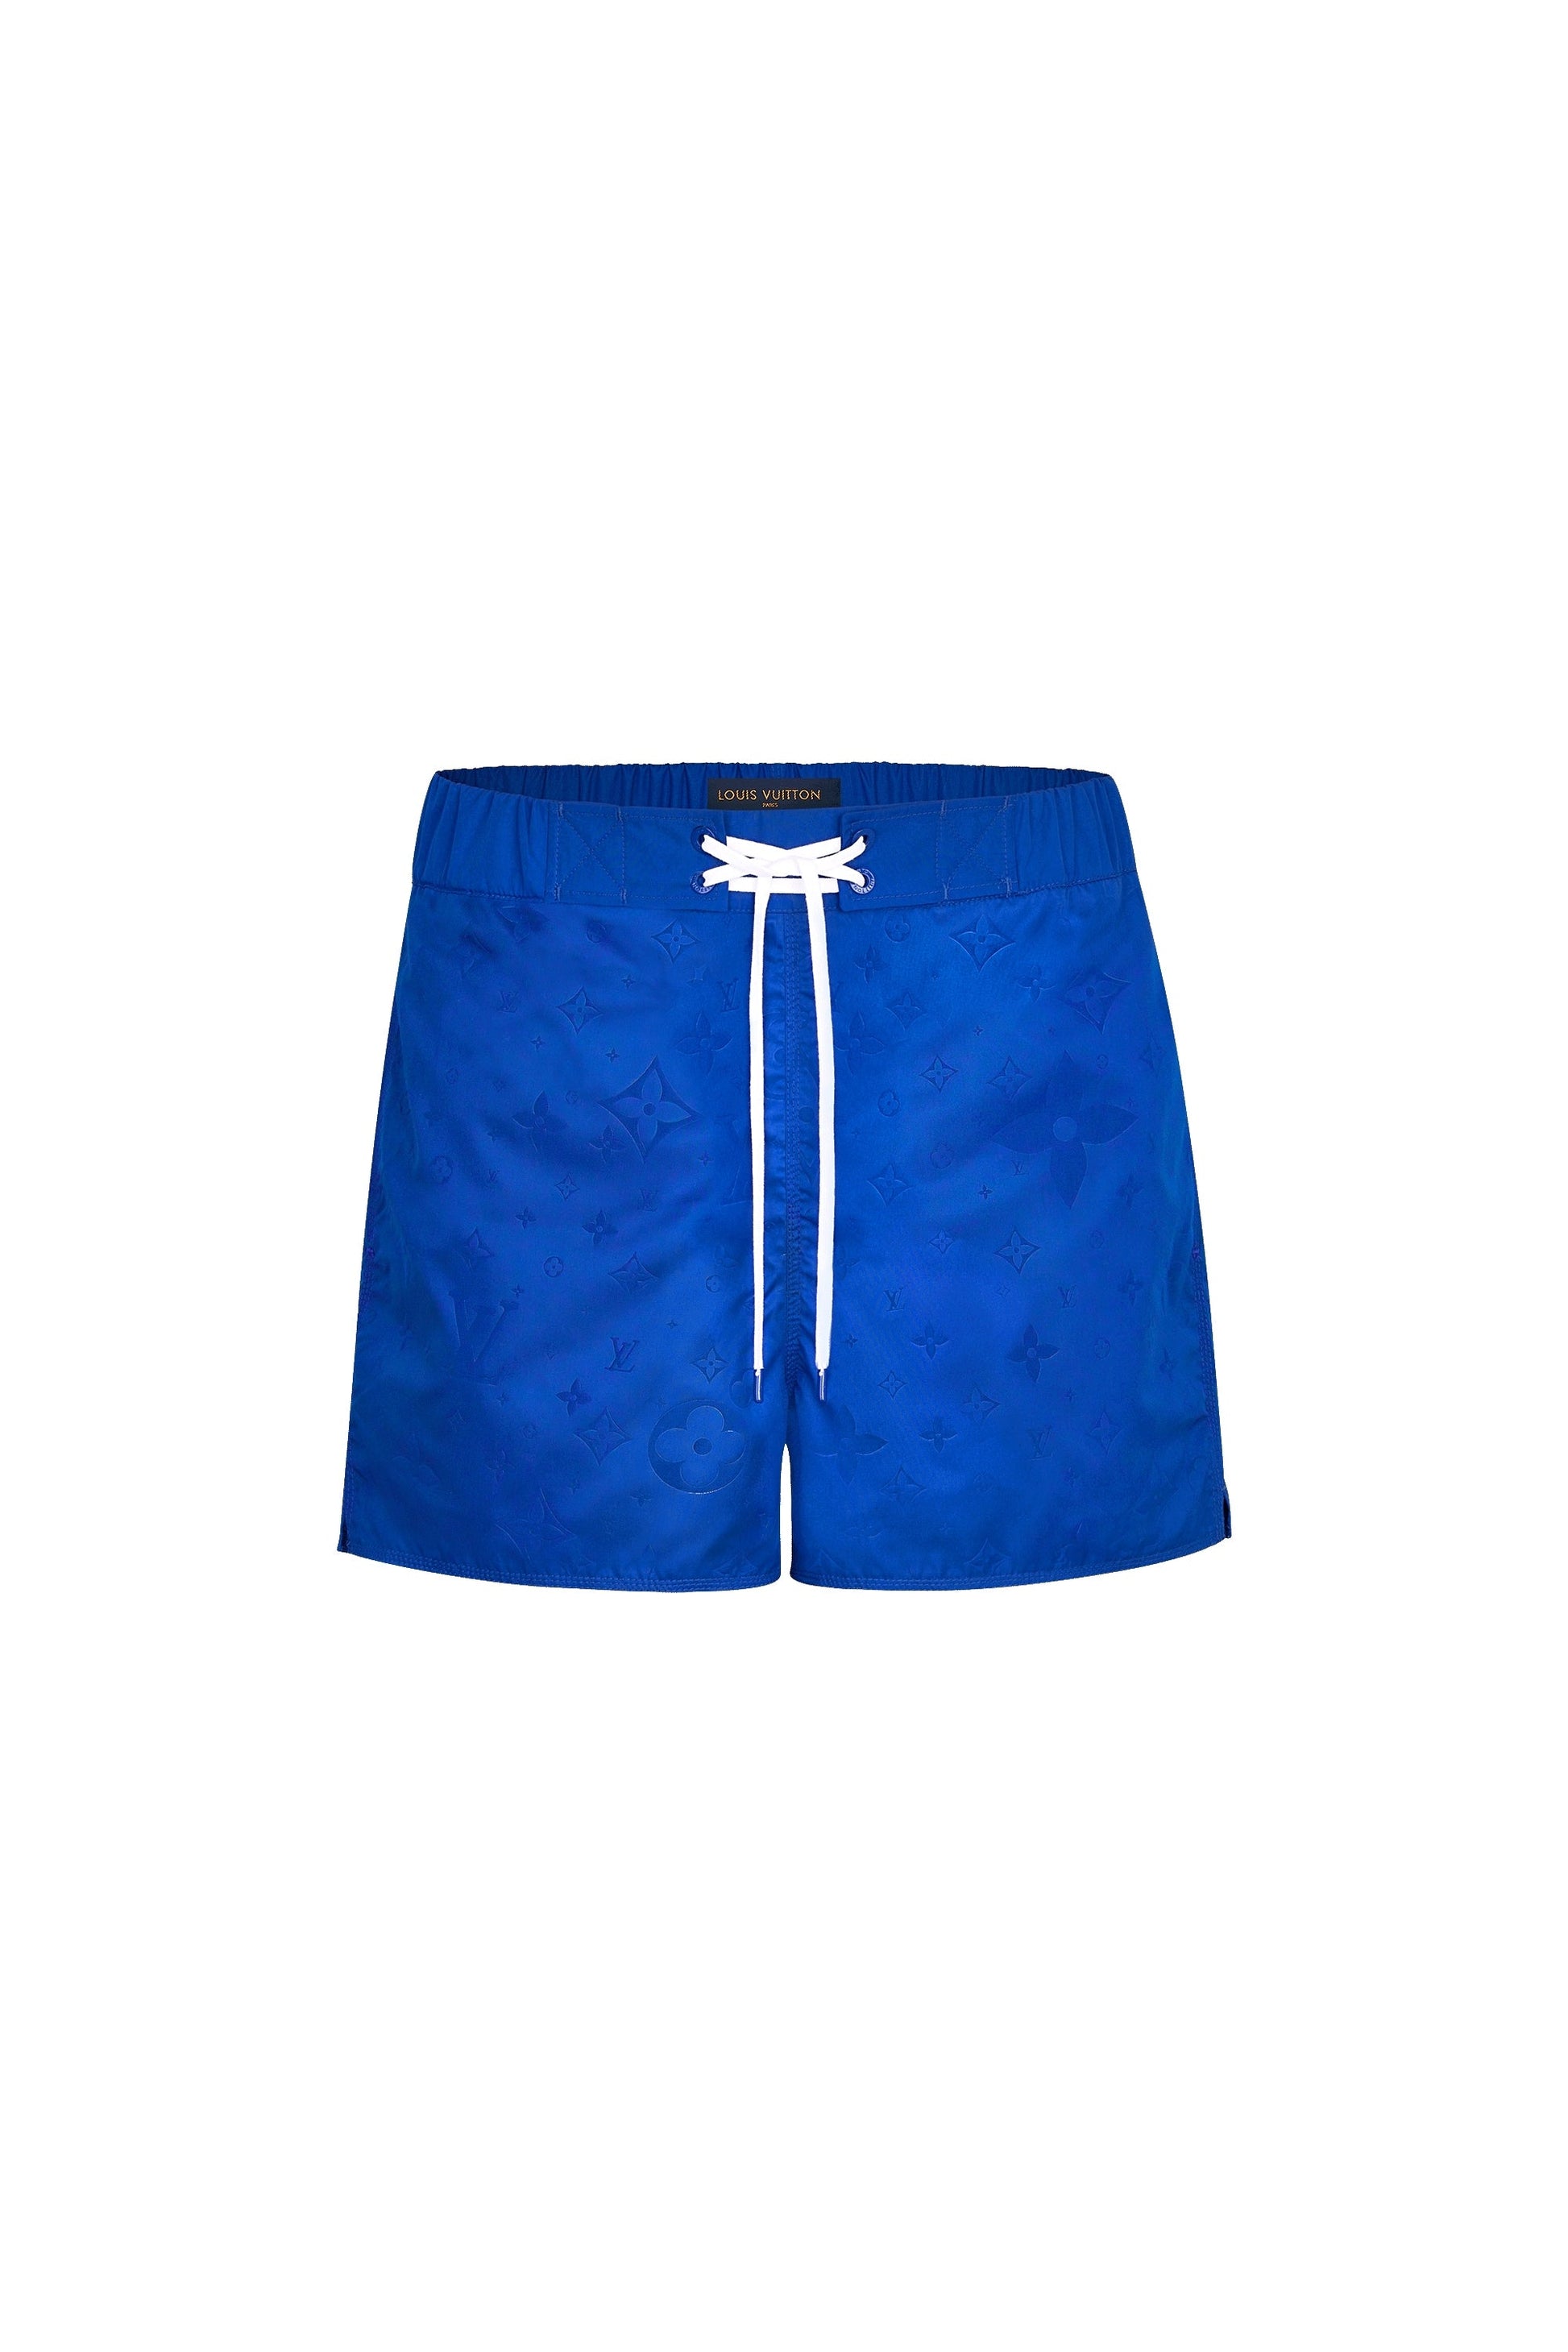 Louis Vuitton Shorts SOLD  Louis vuitton, Vuitton, Swim shorts